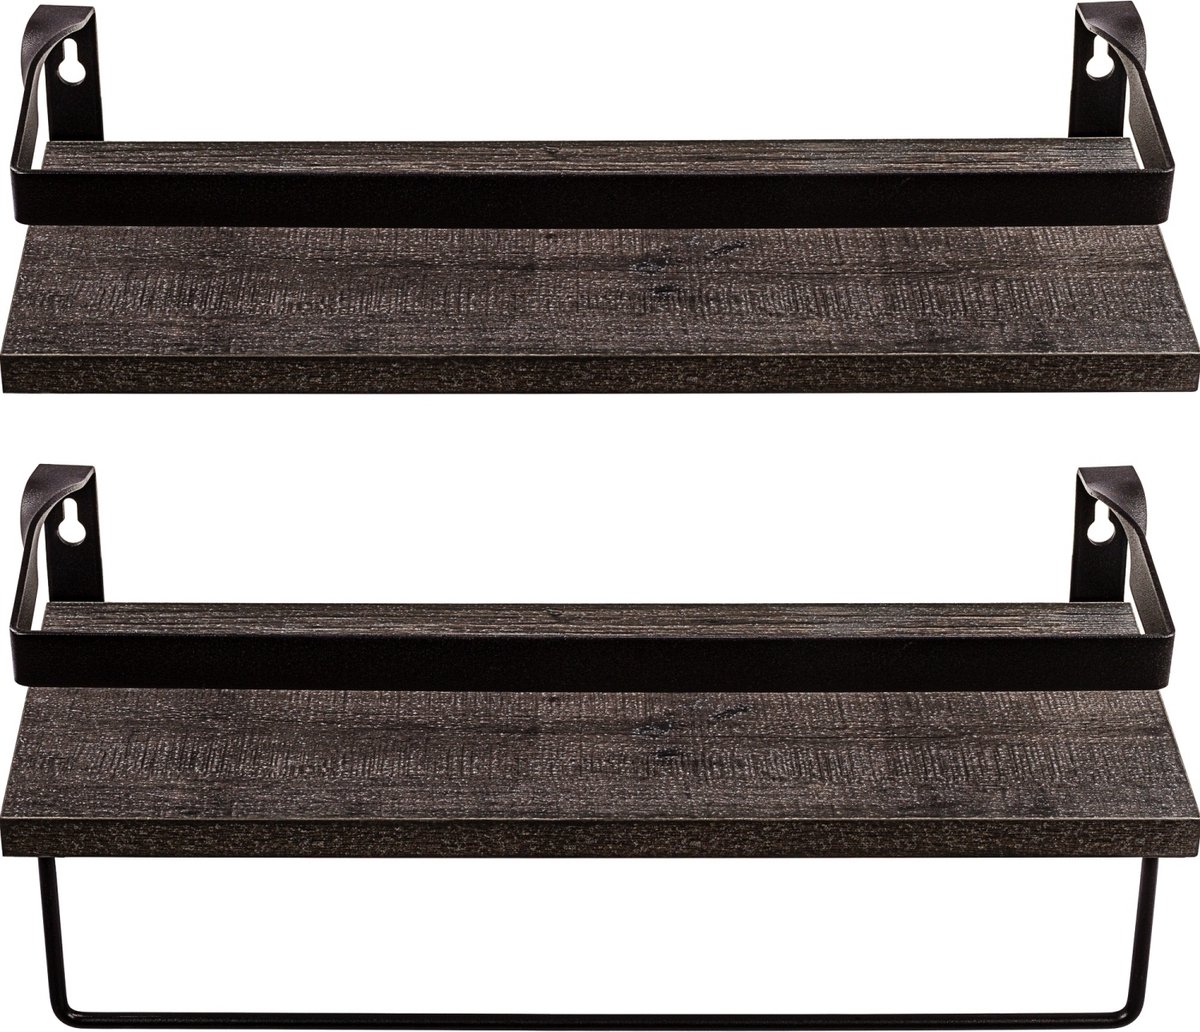 Handdoekrek keuken - Muurplank - Wandplank - Draagvermogen 15 kg - Zwevend - Set van 2 stuks - MDF - Staal - Donkere houttinten - 40 x 15 x 16 cm